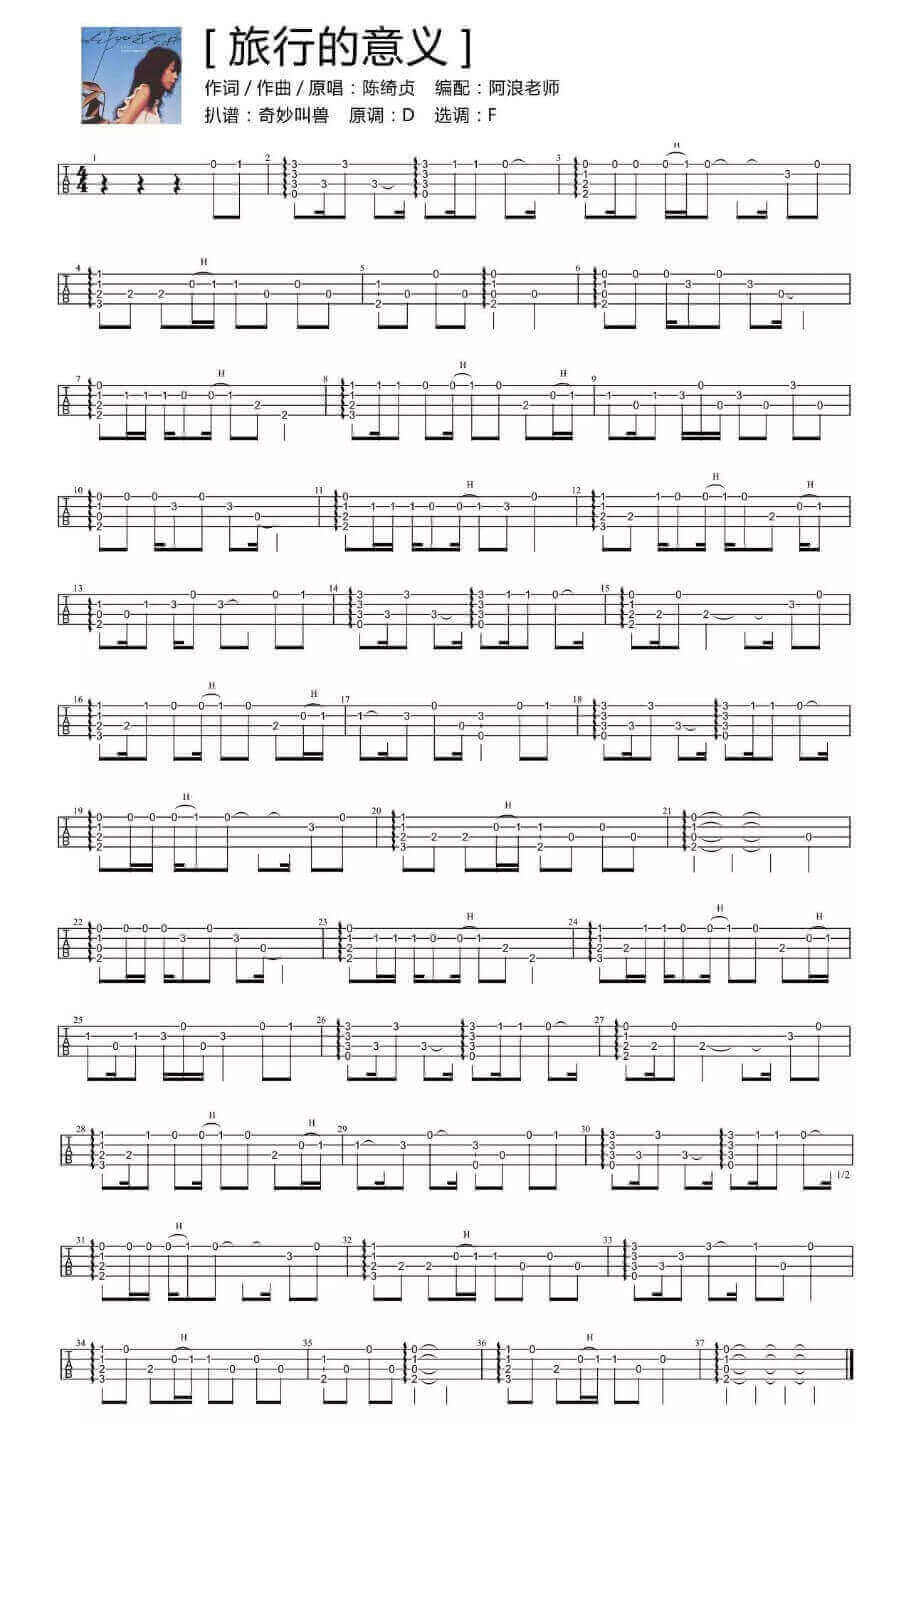 阿浪老师版《旅行的意义》  ukulele指弹曲谱插图